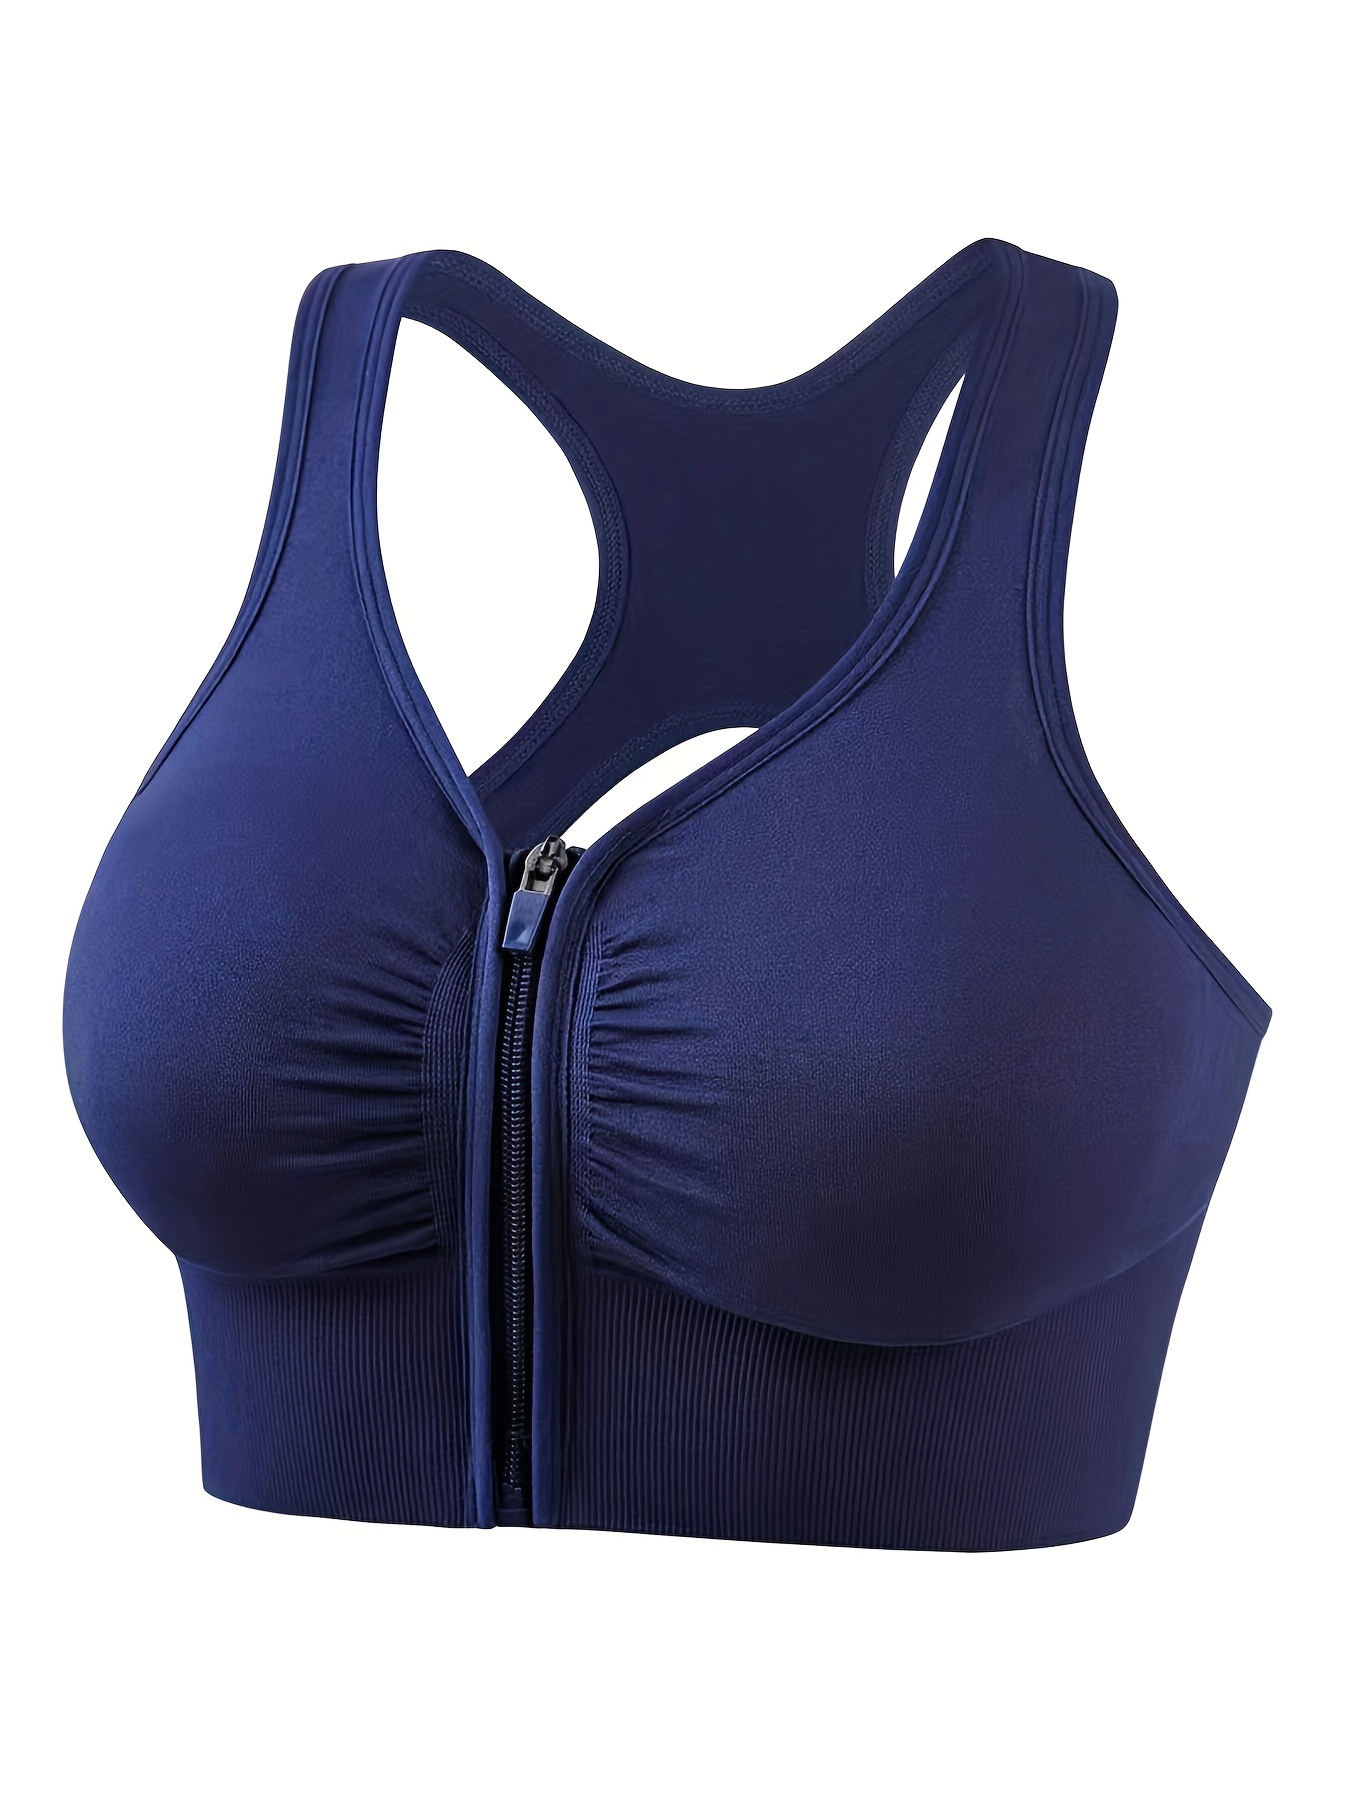 Buy Blue Bras for Women by Bodycare Online